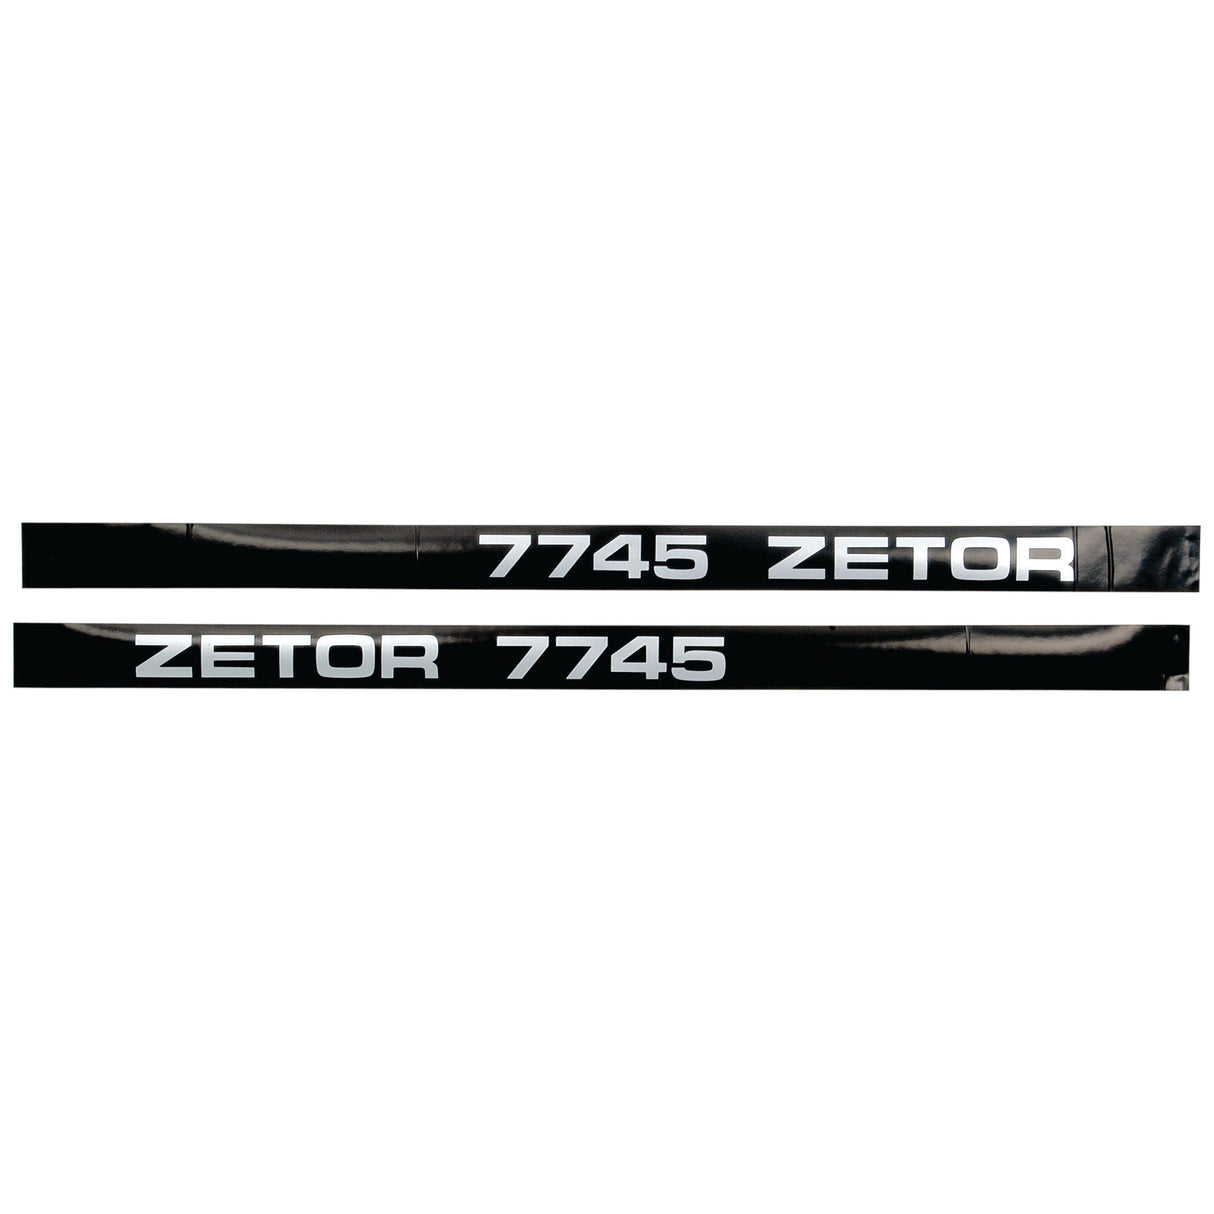 Decal Set - Zetor 7745
 - S.64403 - Farming Parts